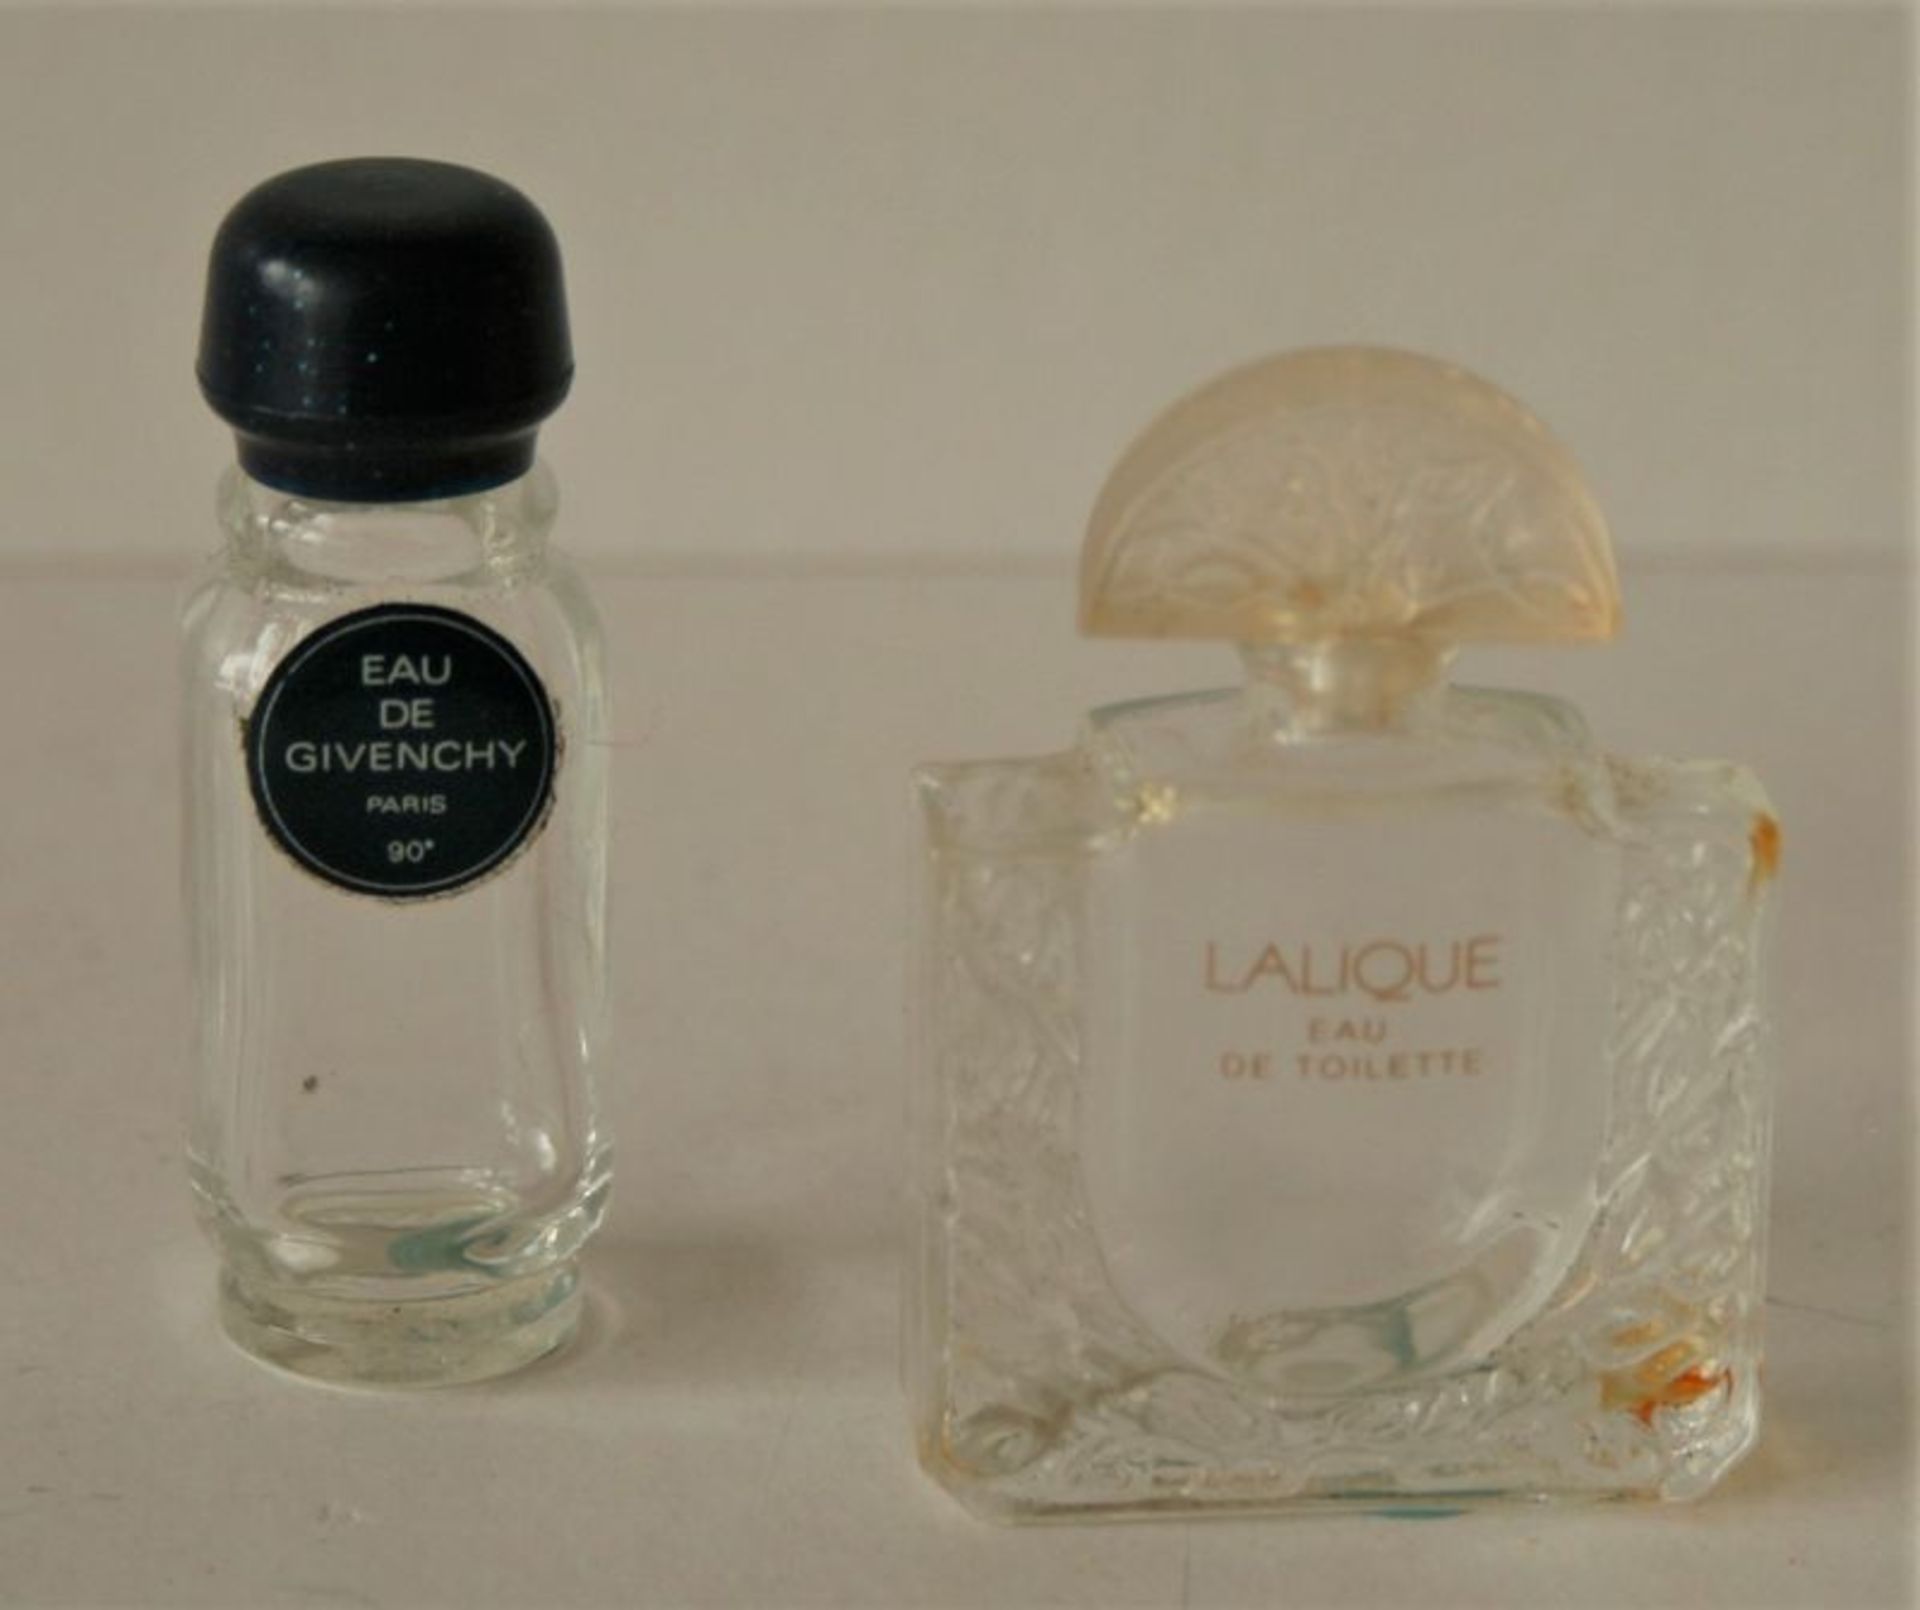 Flacon de parfum LALIQUE, design floral et bouchon en forme de demi-cercle, vide, en [...]